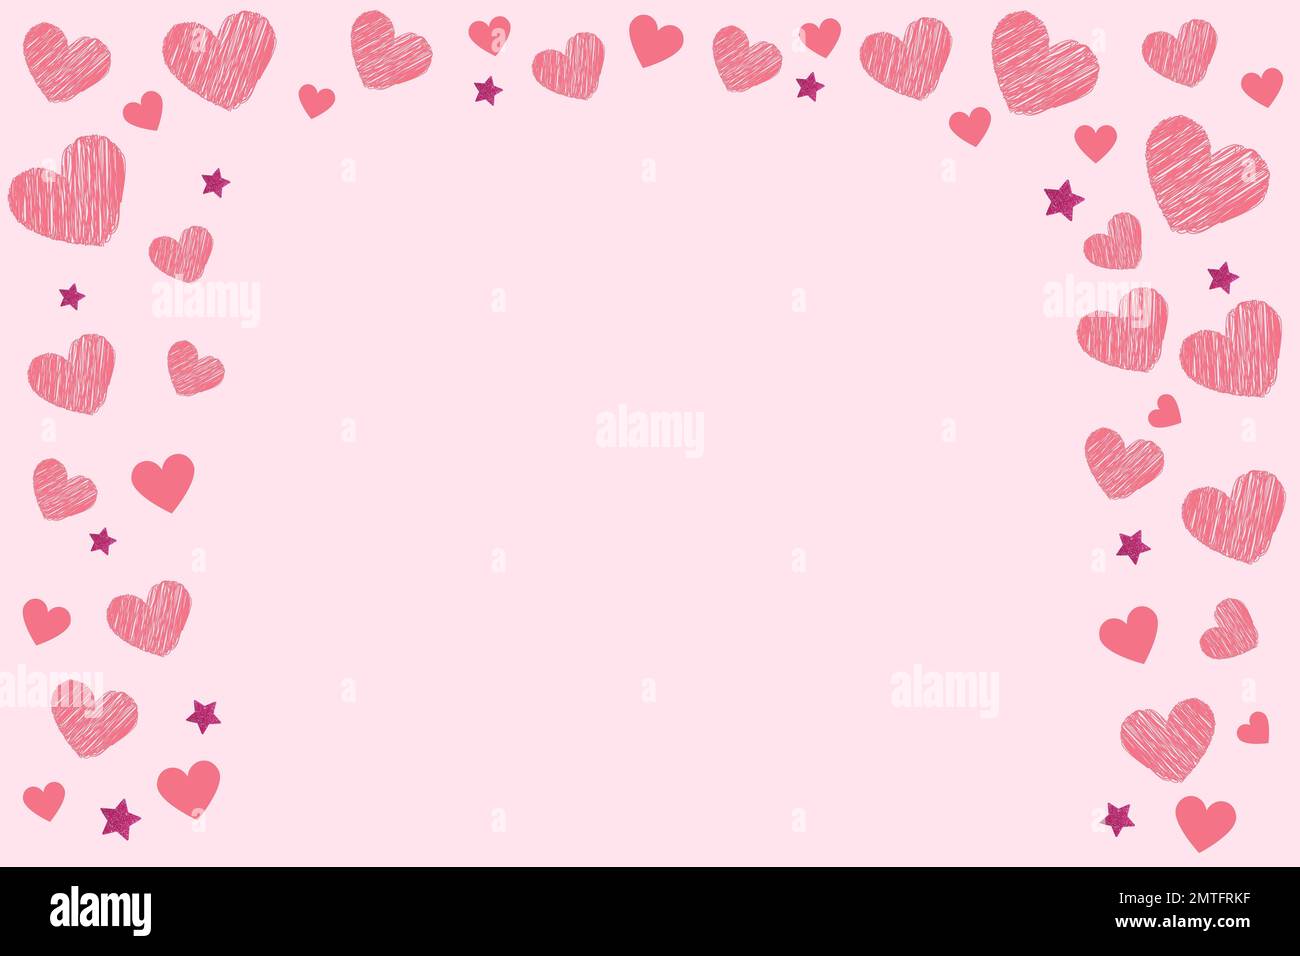 i cuori rosa disegnati a mano e le stelle glitterate modellano i doodles su fondo rosa piatto per il messaggio o gli articoli. bella carta per la celebrazione o l'invito Foto Stock